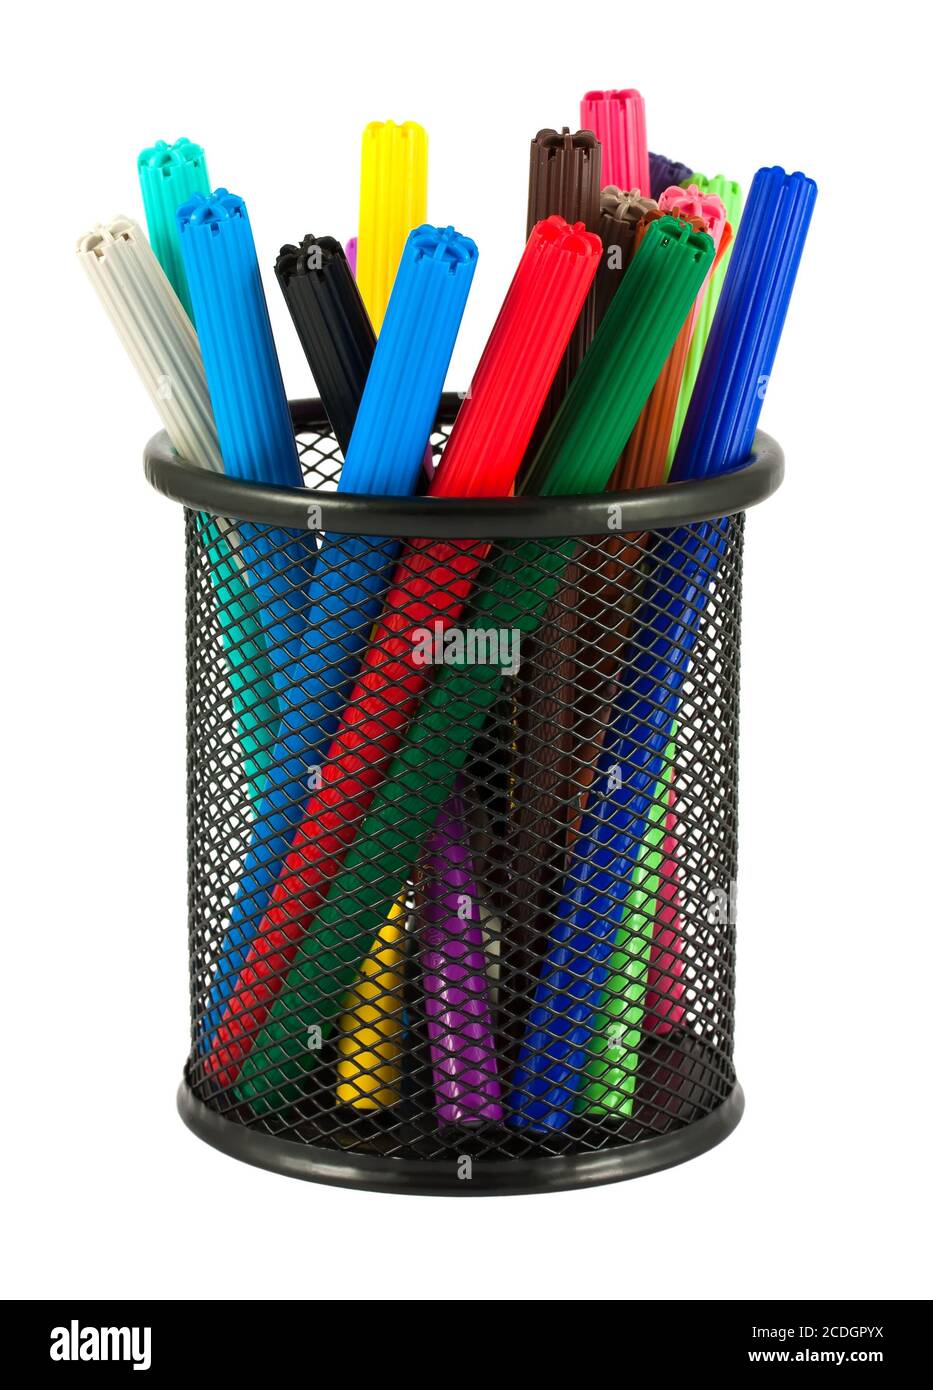 Jeu de stylos feutre de différentes couleurs dans le support Banque D'Images